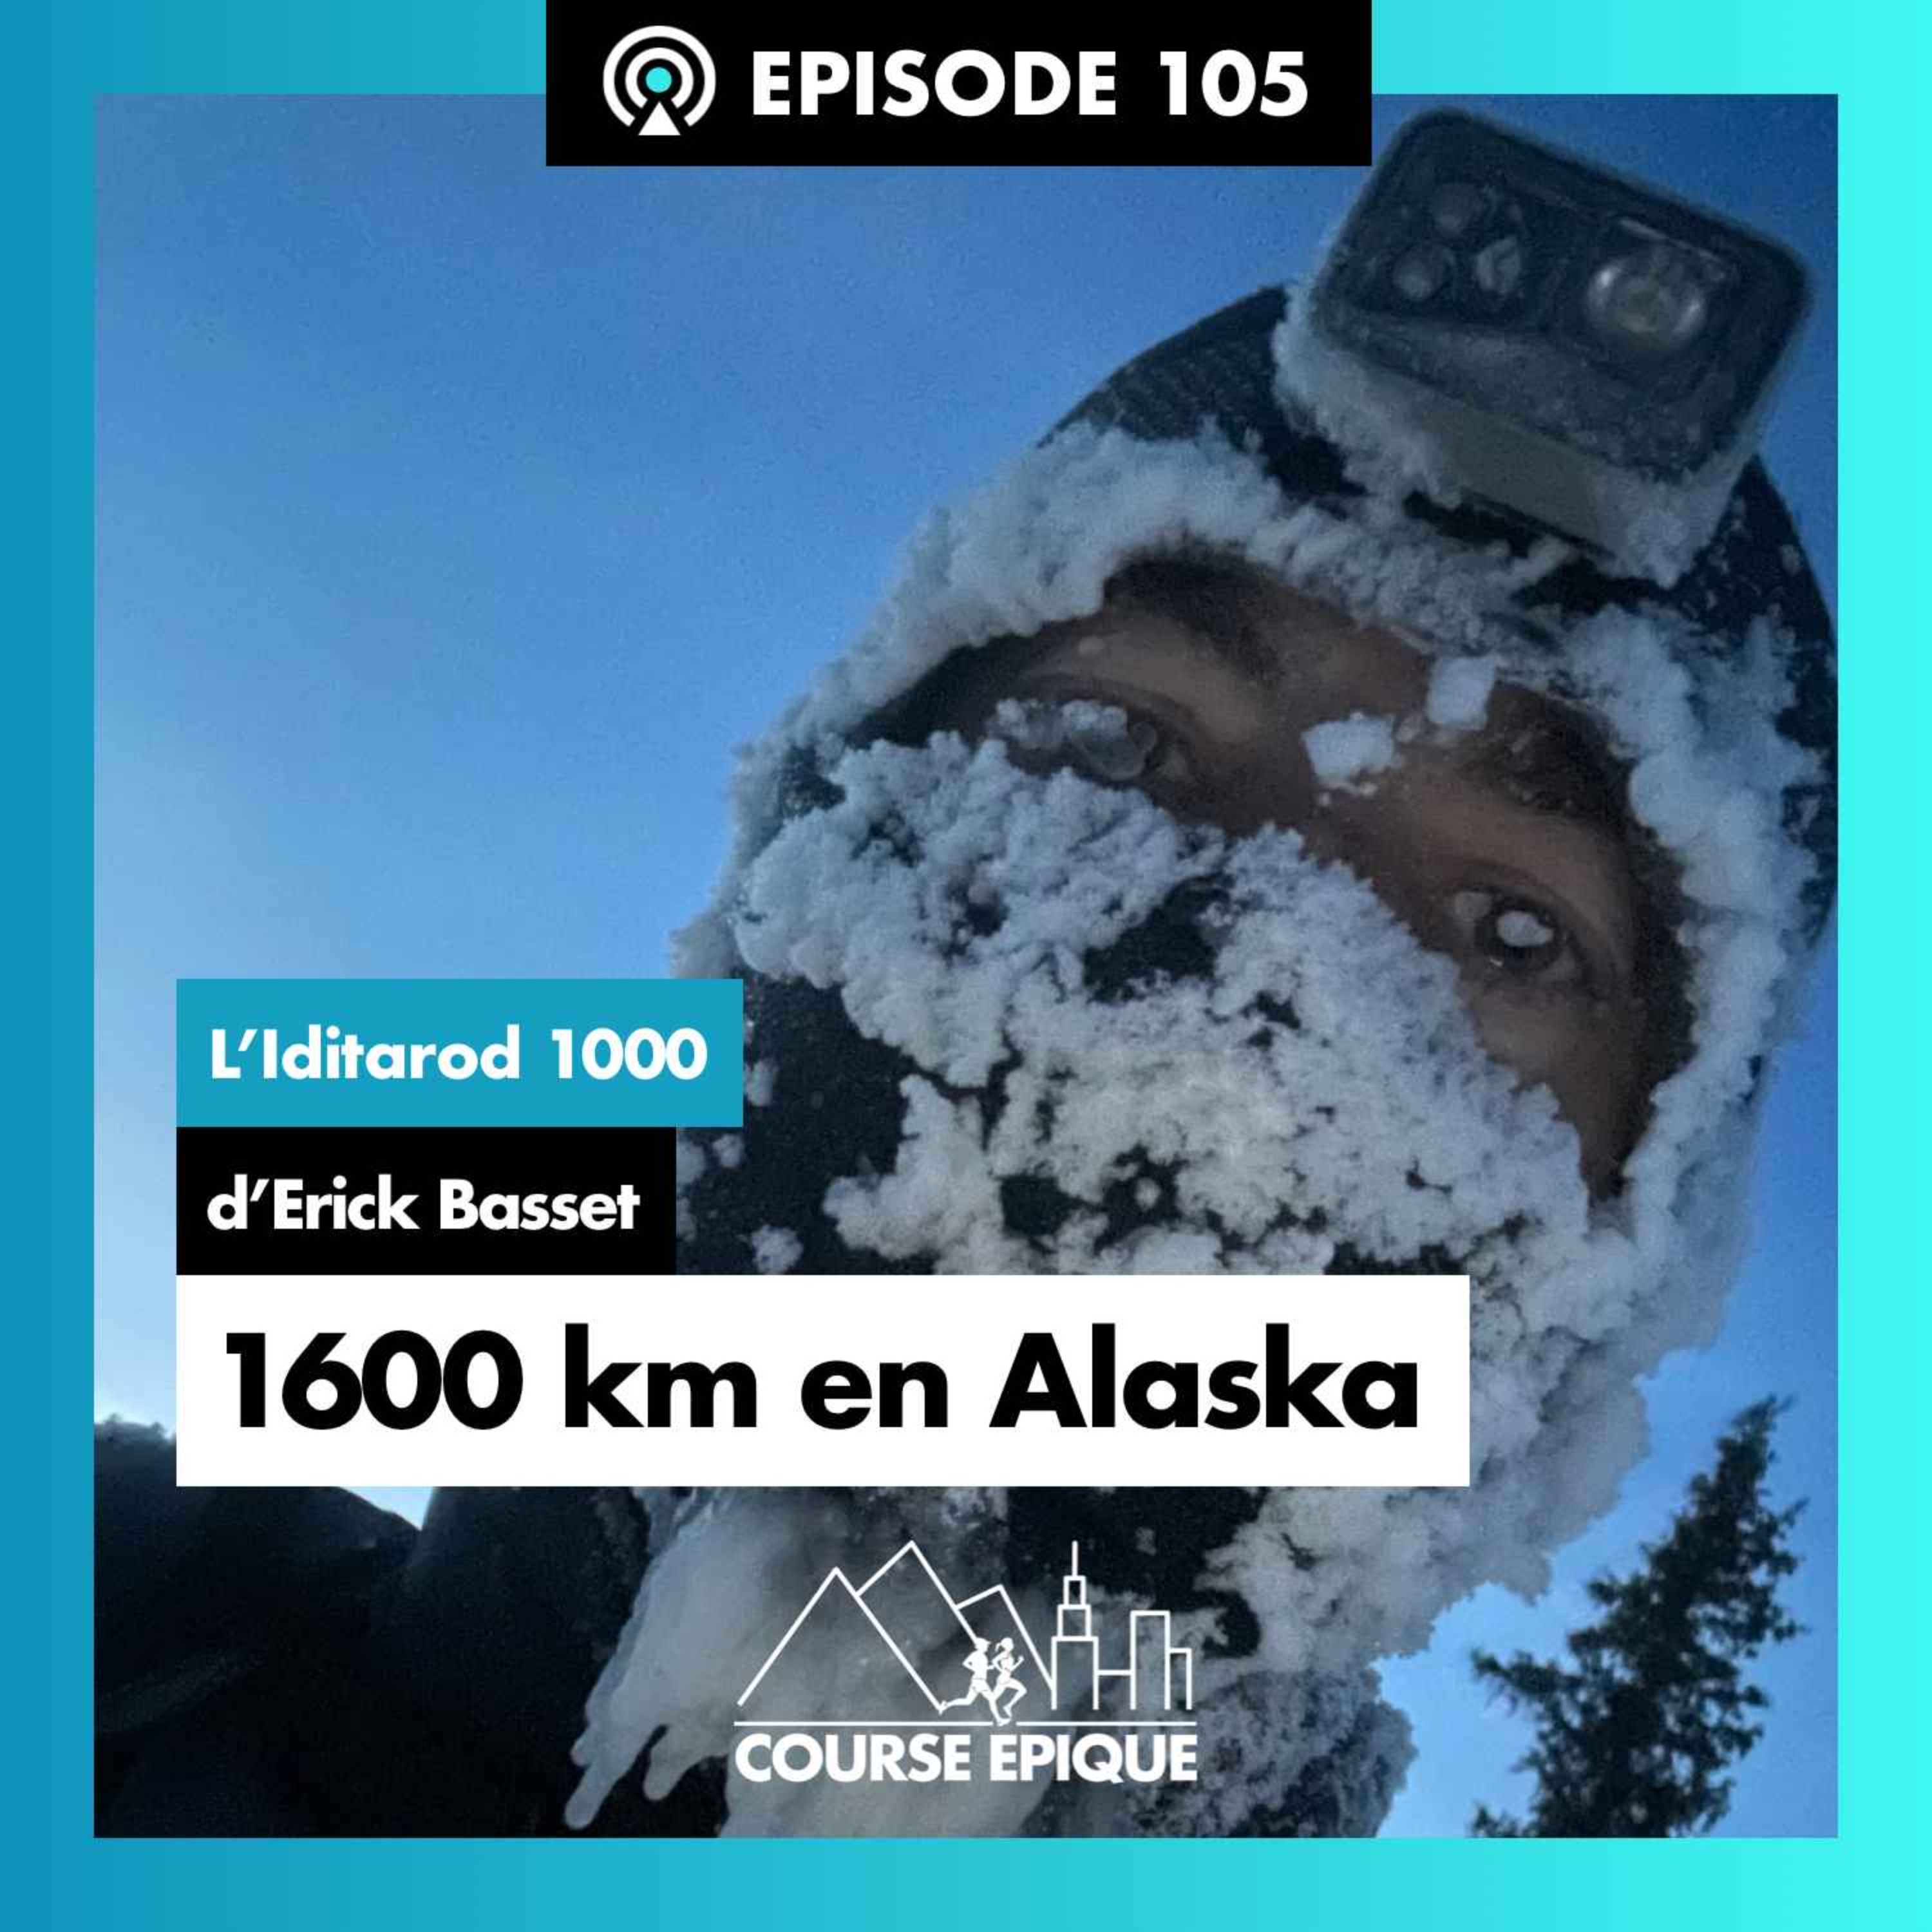 #105 "1600 kilomètres en Alaska", l'Iditarod 1000 d'Erick Basset